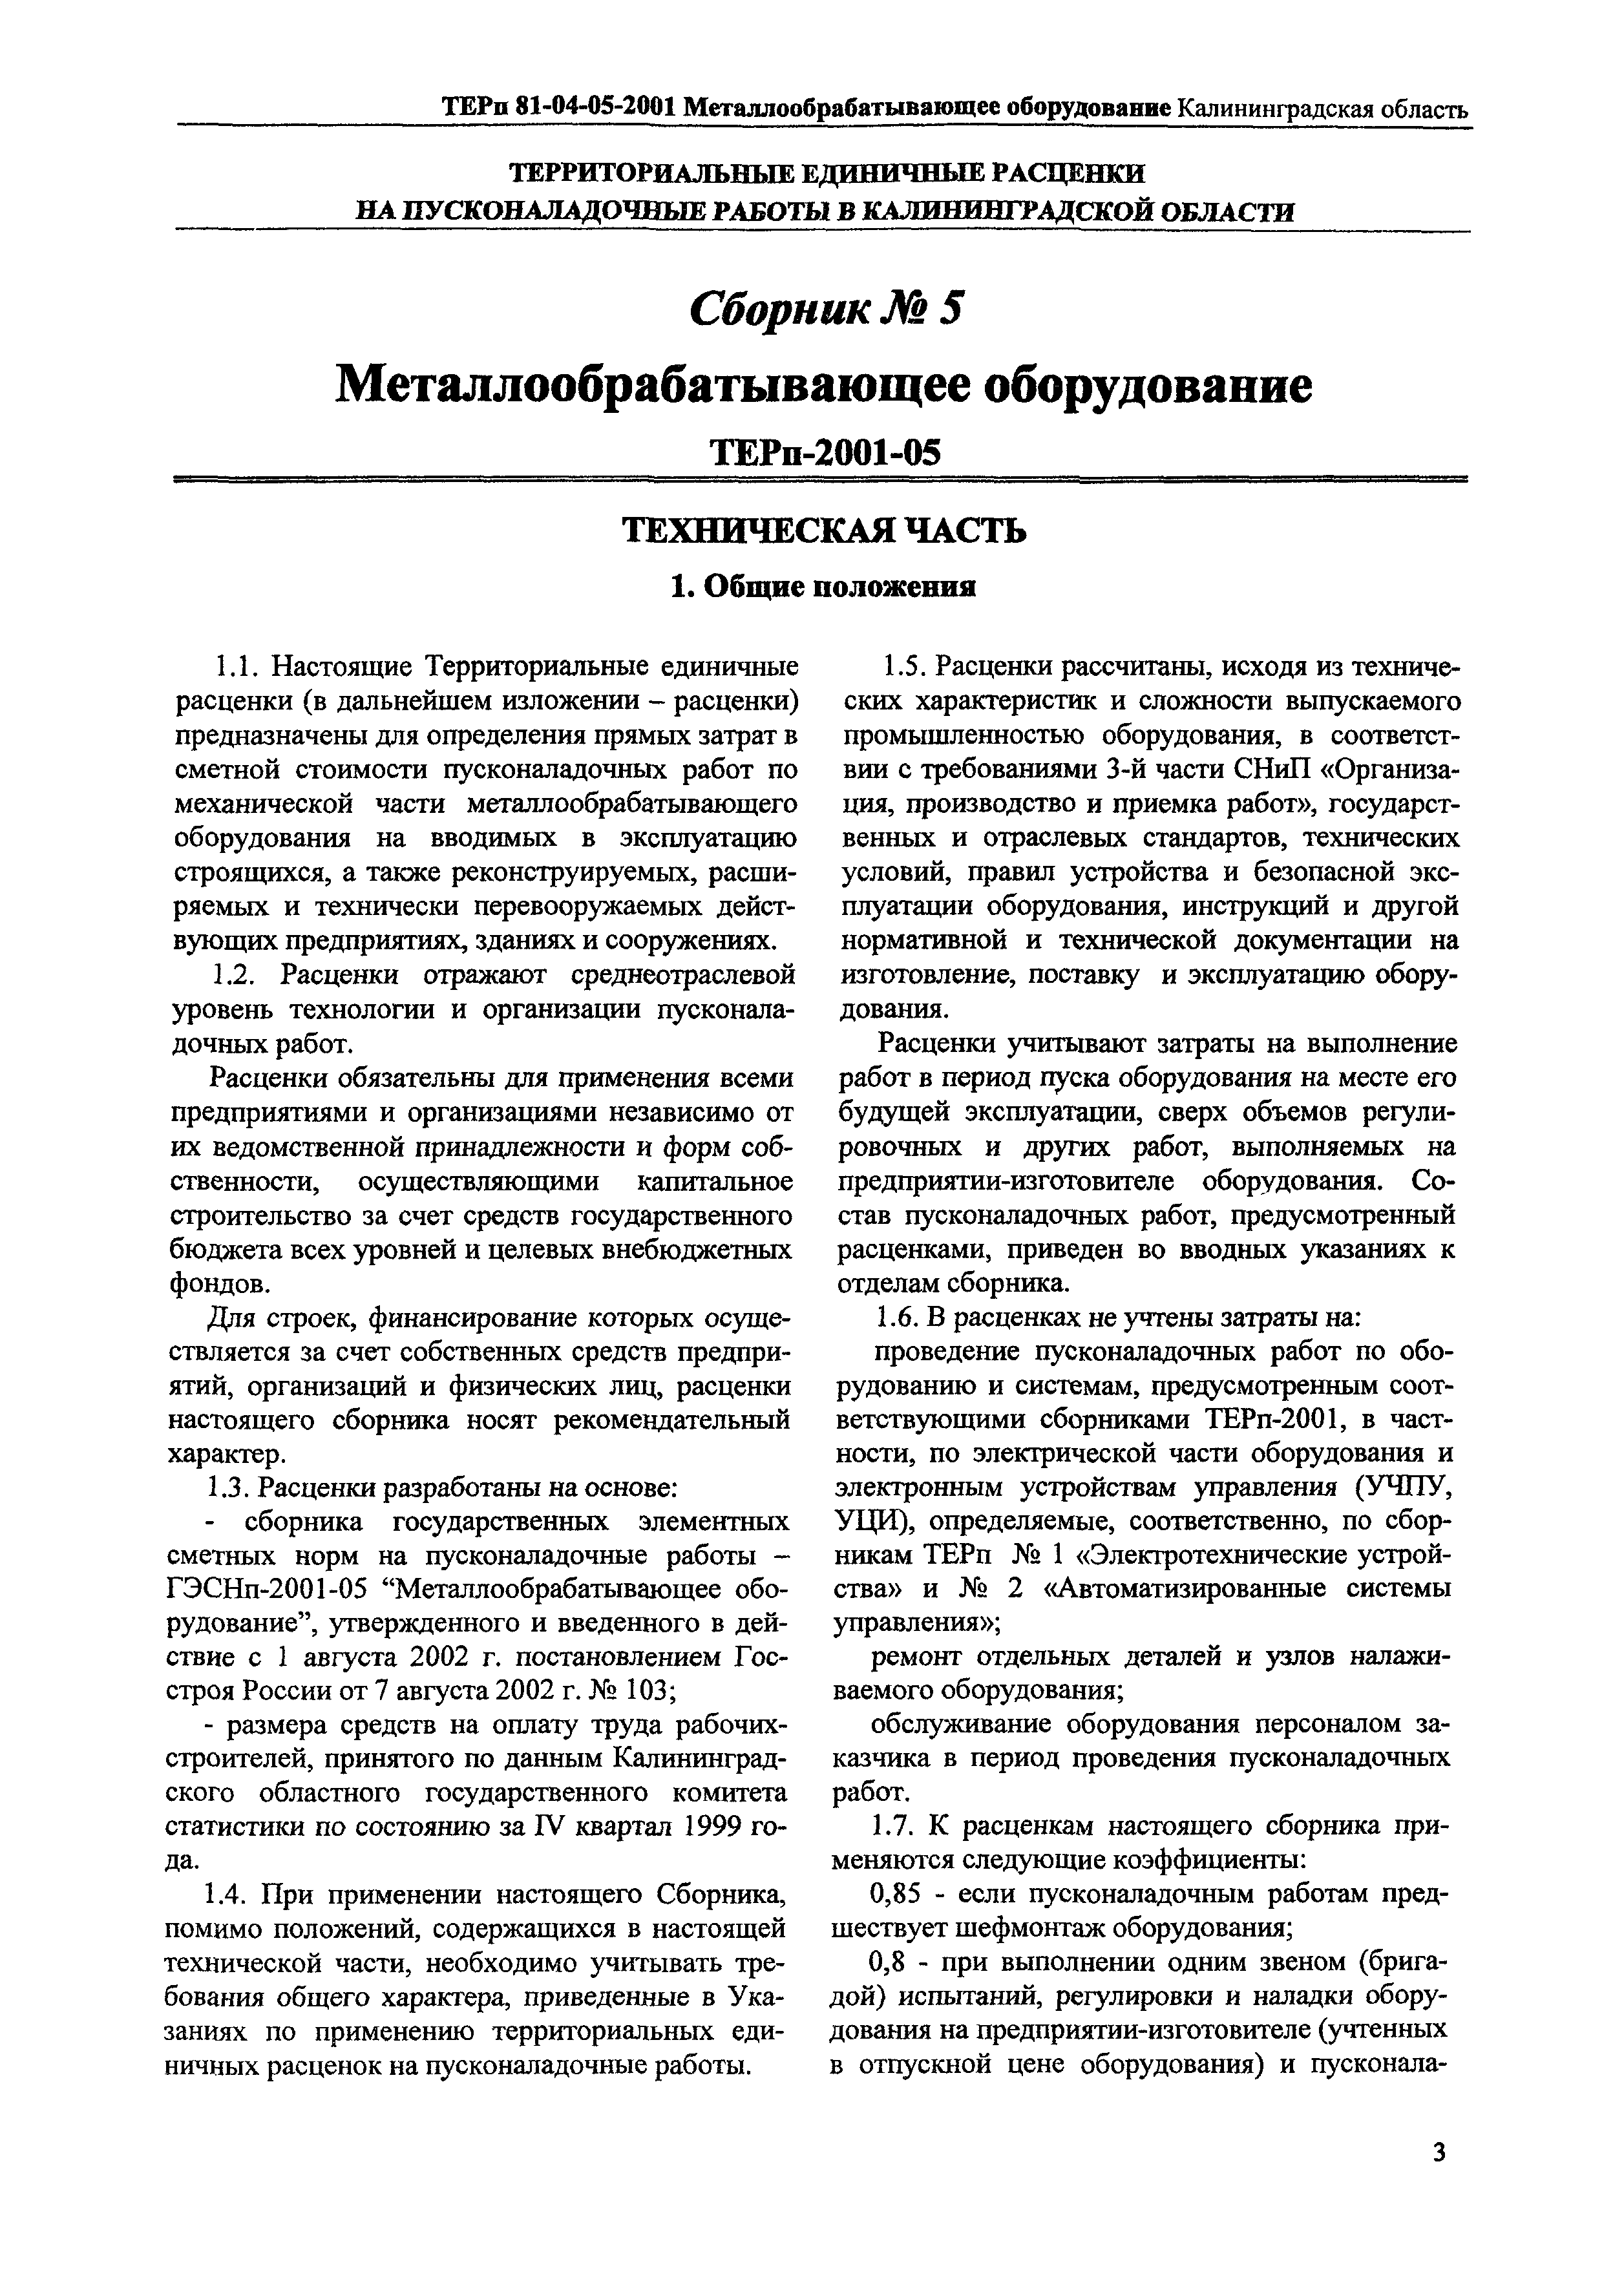 ТЕРп Калининградской области 2001-05